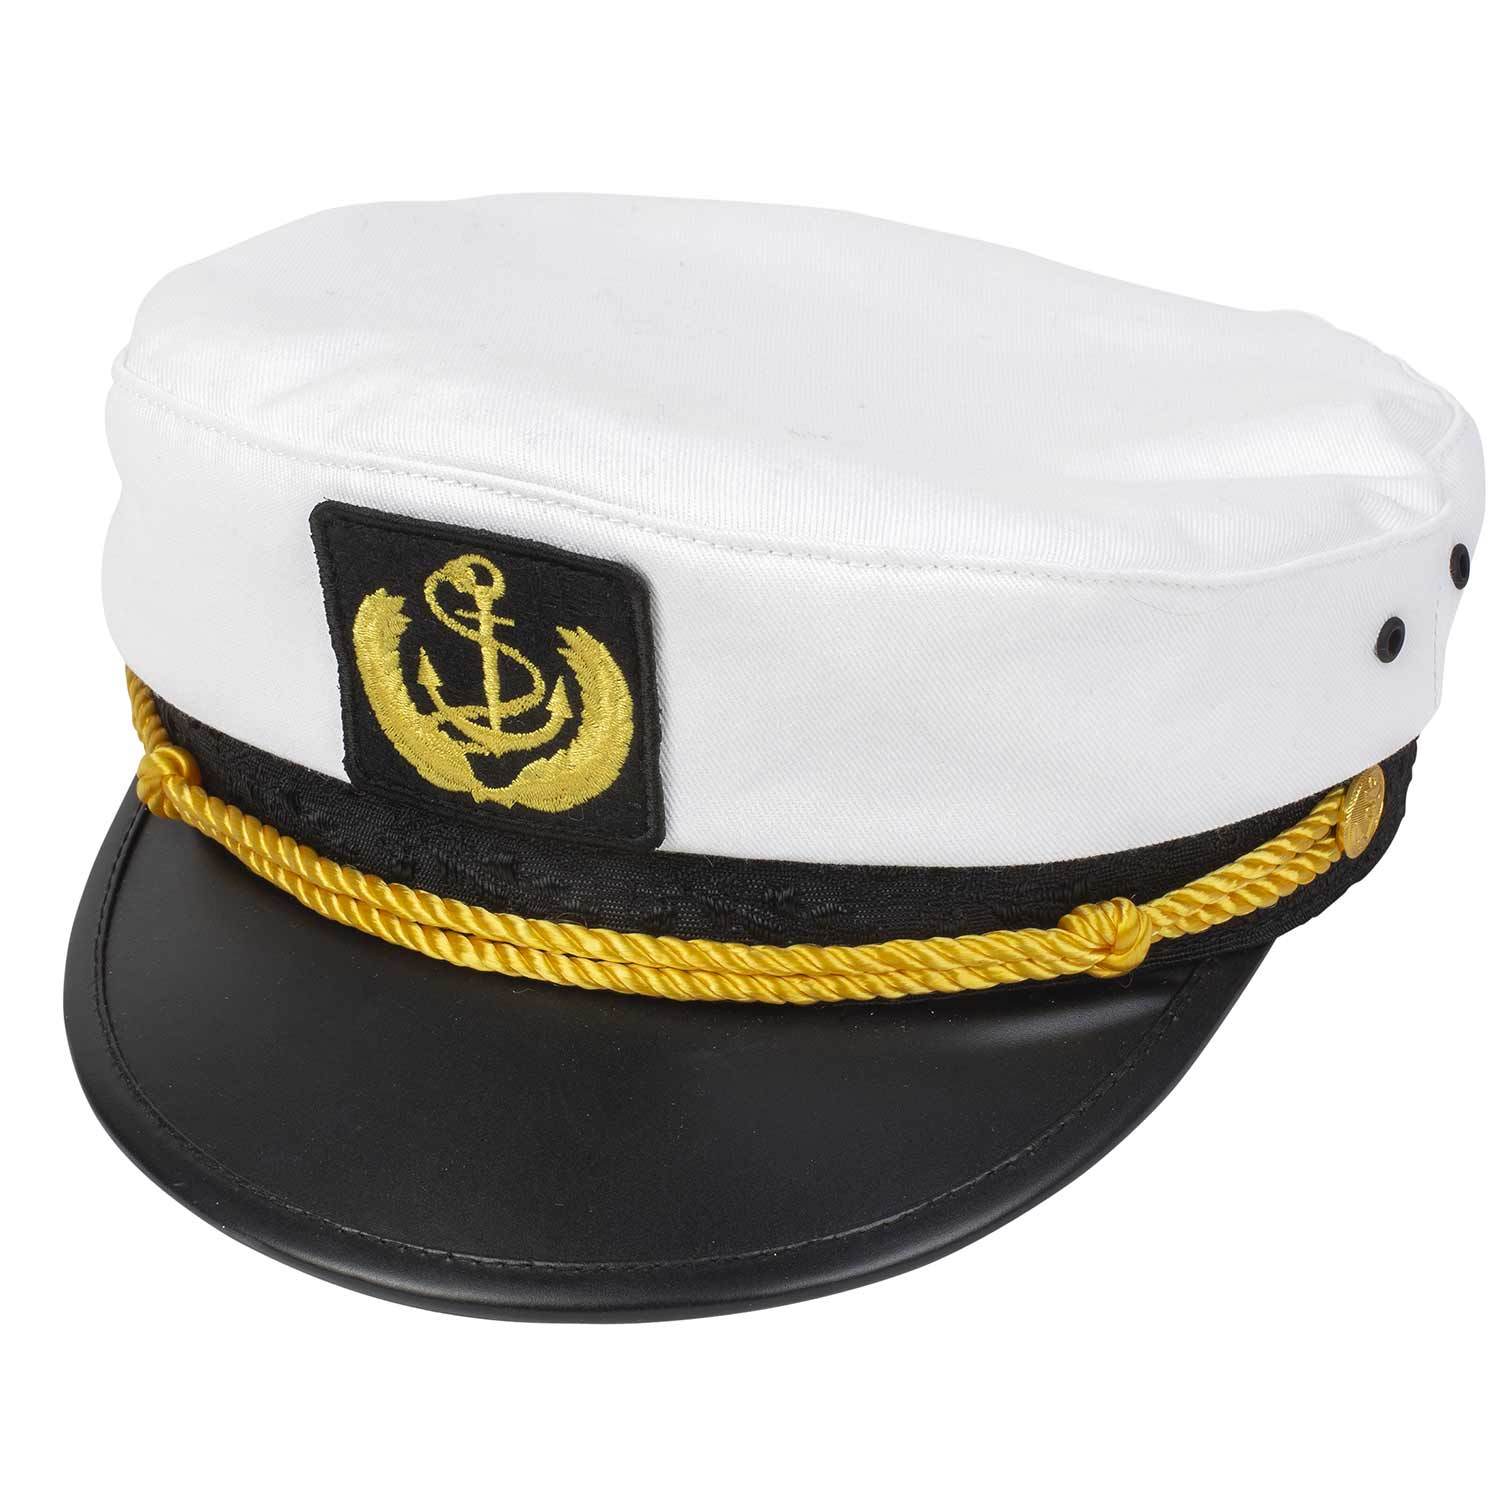 WEST MARINE Yacht Captain Cap